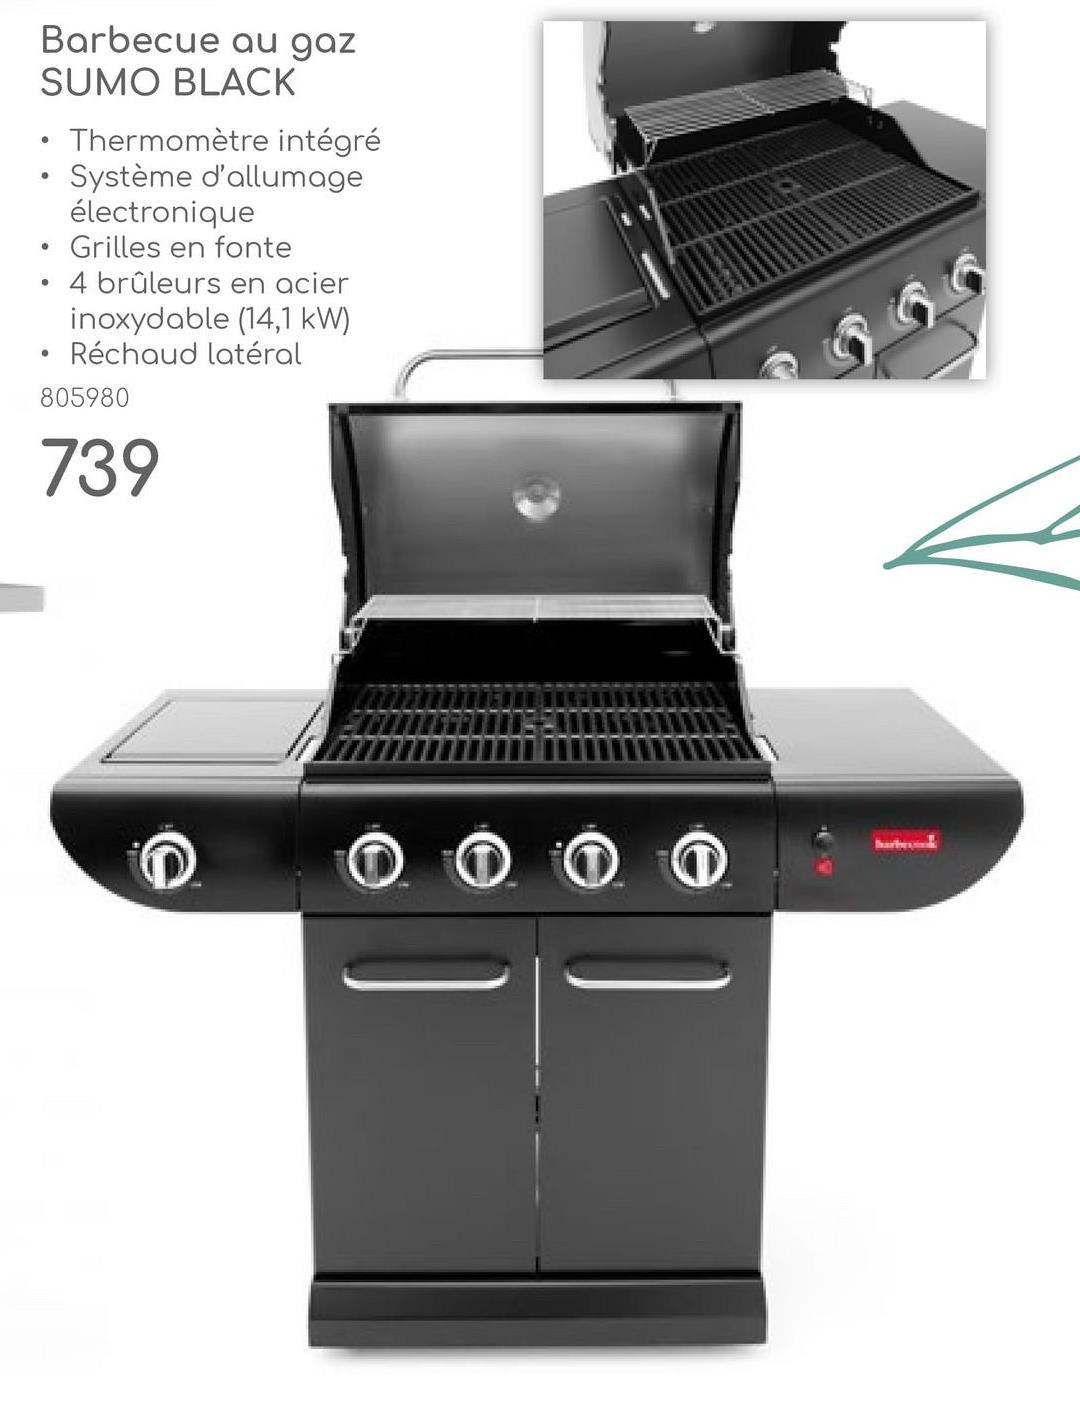 Barbecue au gaz
SUMO BLACK
•
•
•
Thermomètre intégré
Système d'allumage
électronique
Grilles en fonte
4 brûleurs en acier
inoxydable (14,1 kW)
Réchaud latéral
805980
739
barbe